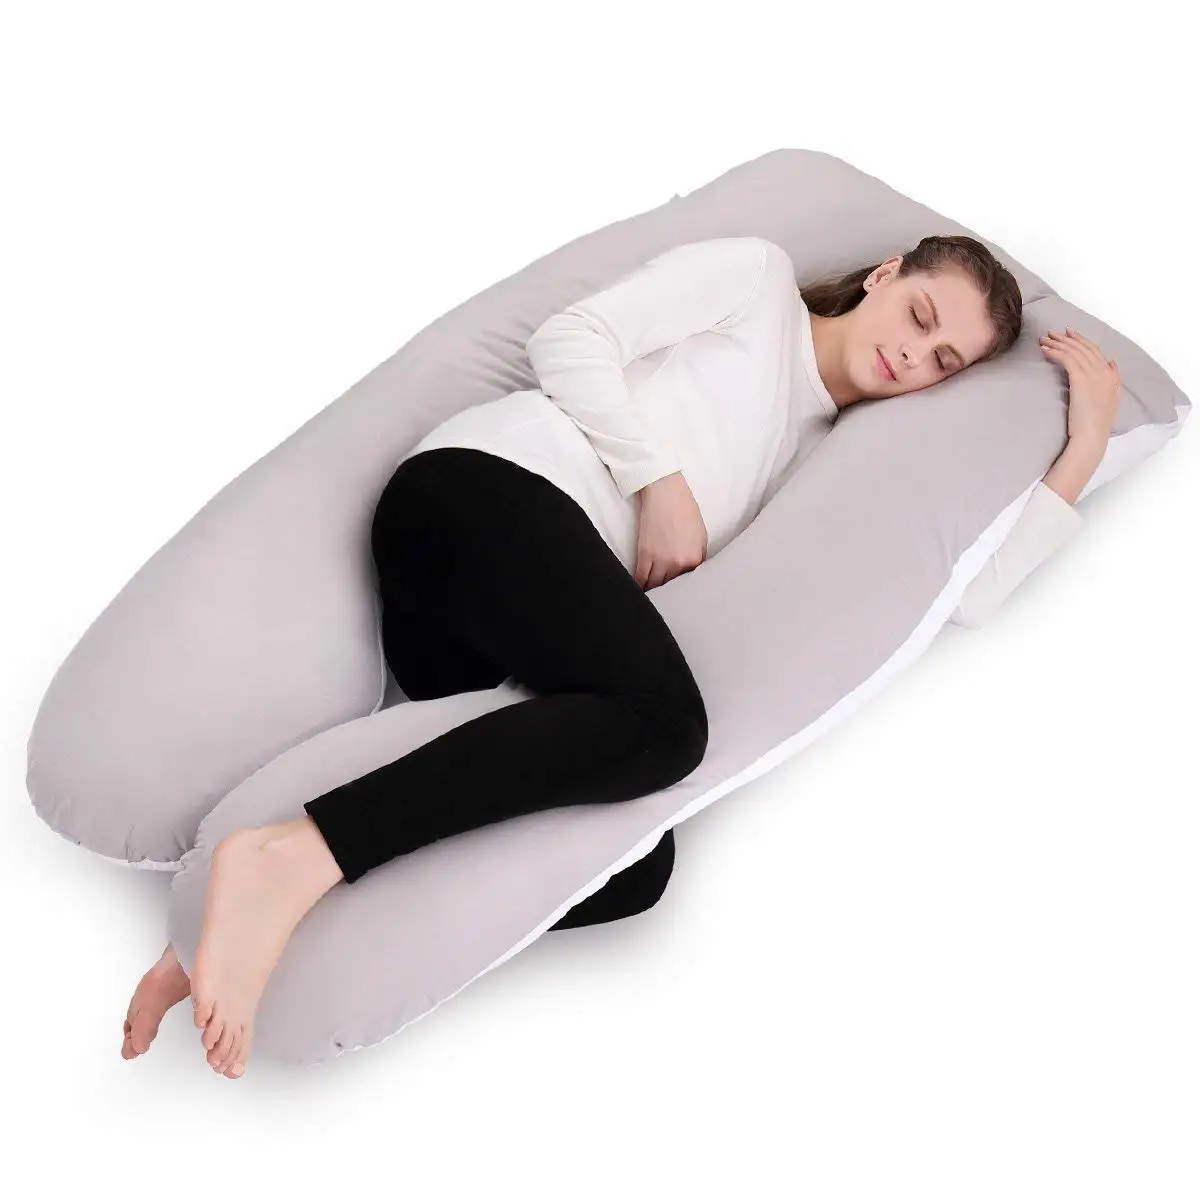 new side sleeper pillow